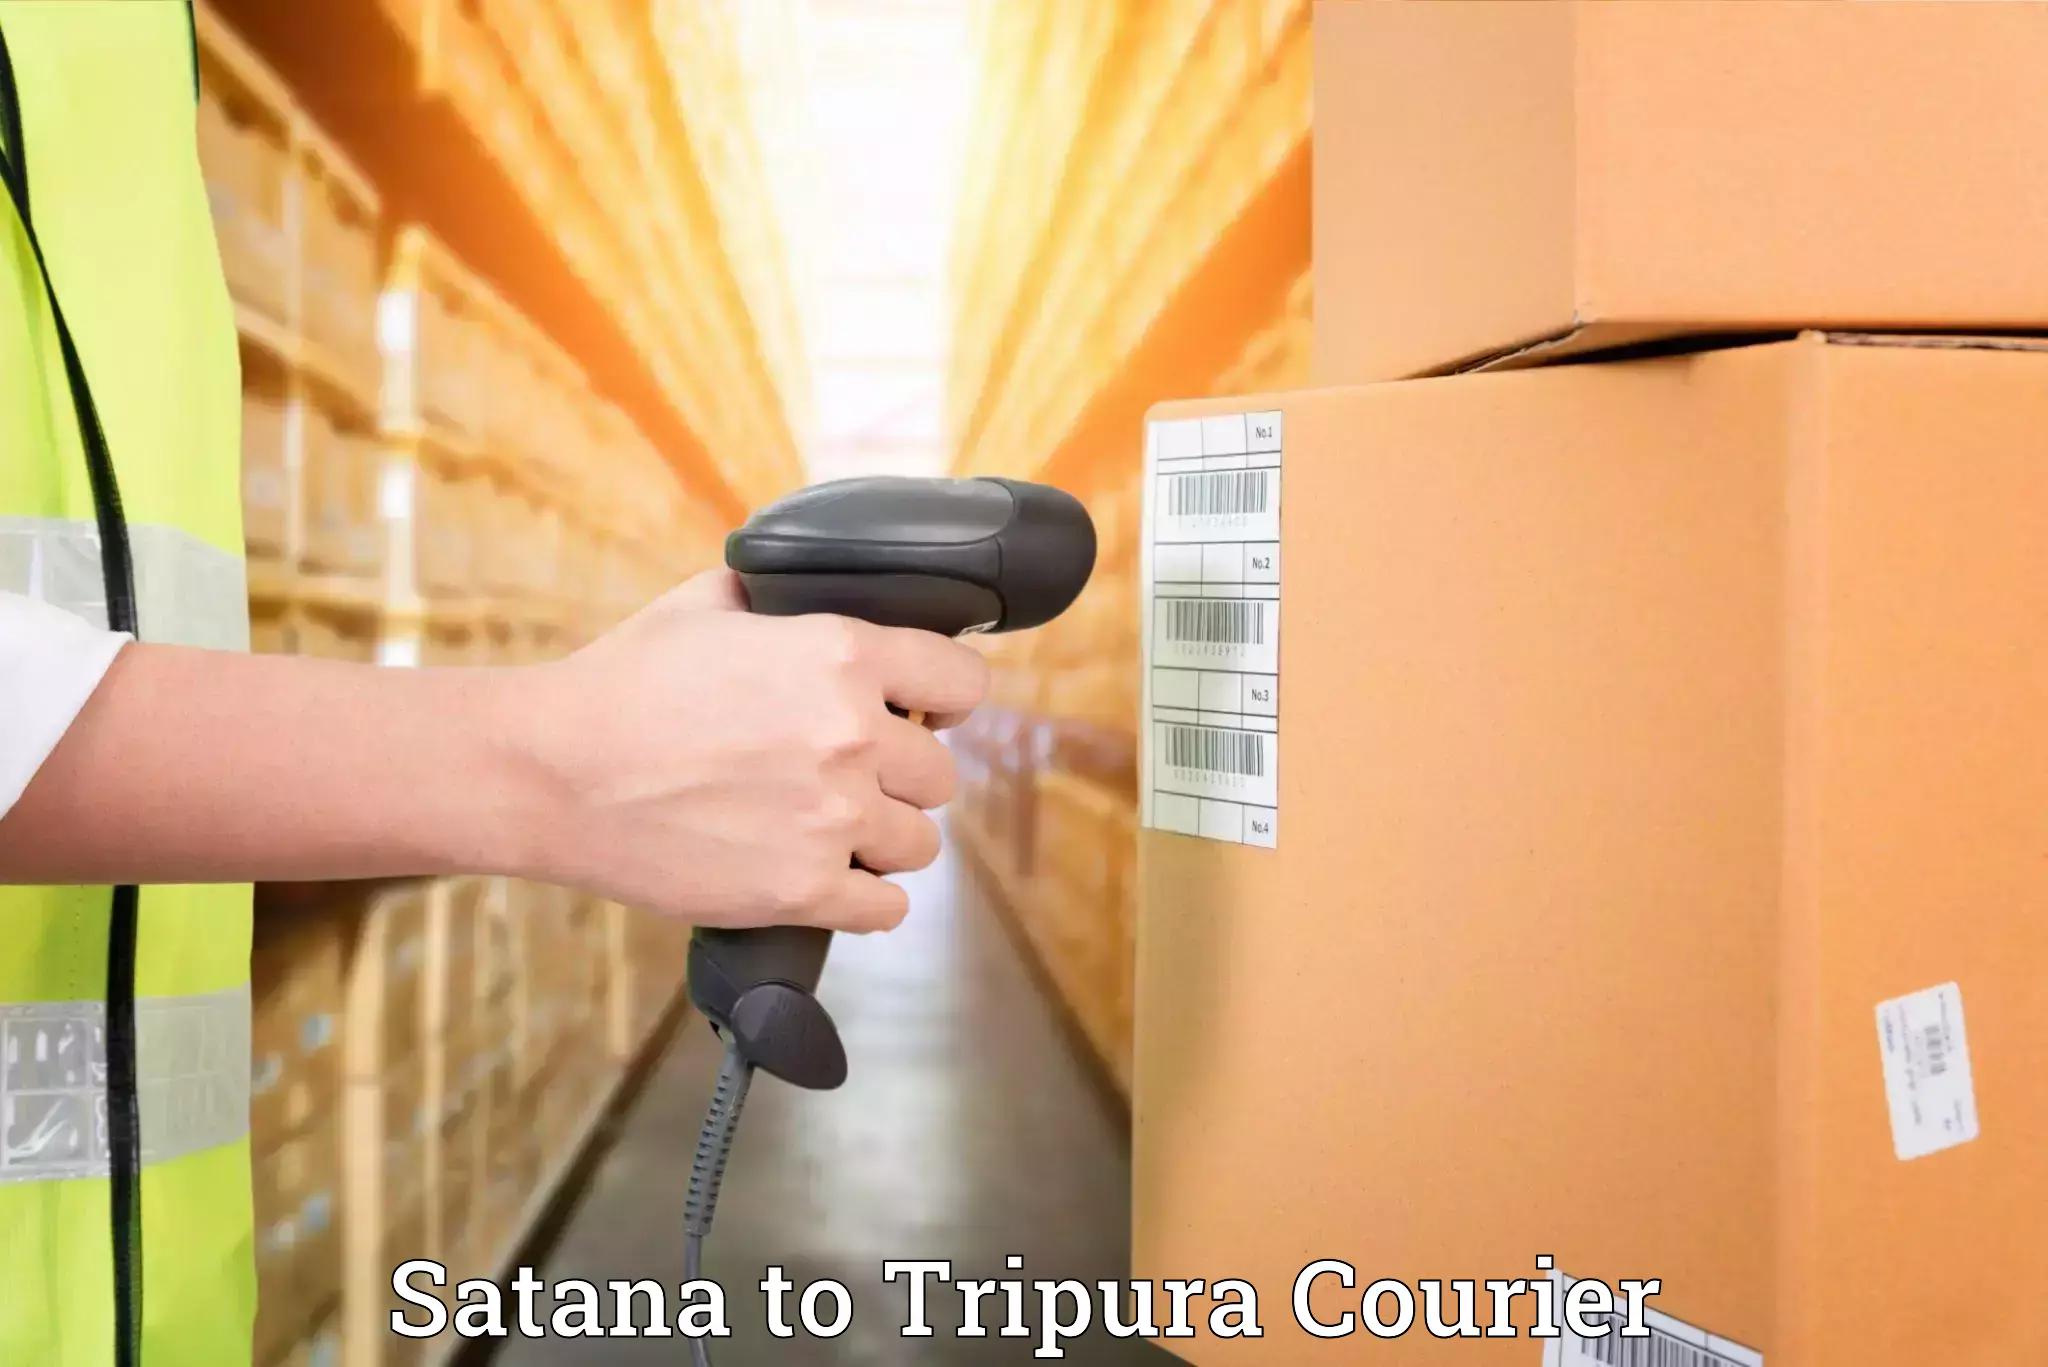 Customized relocation services Satana to IIIT Agartala